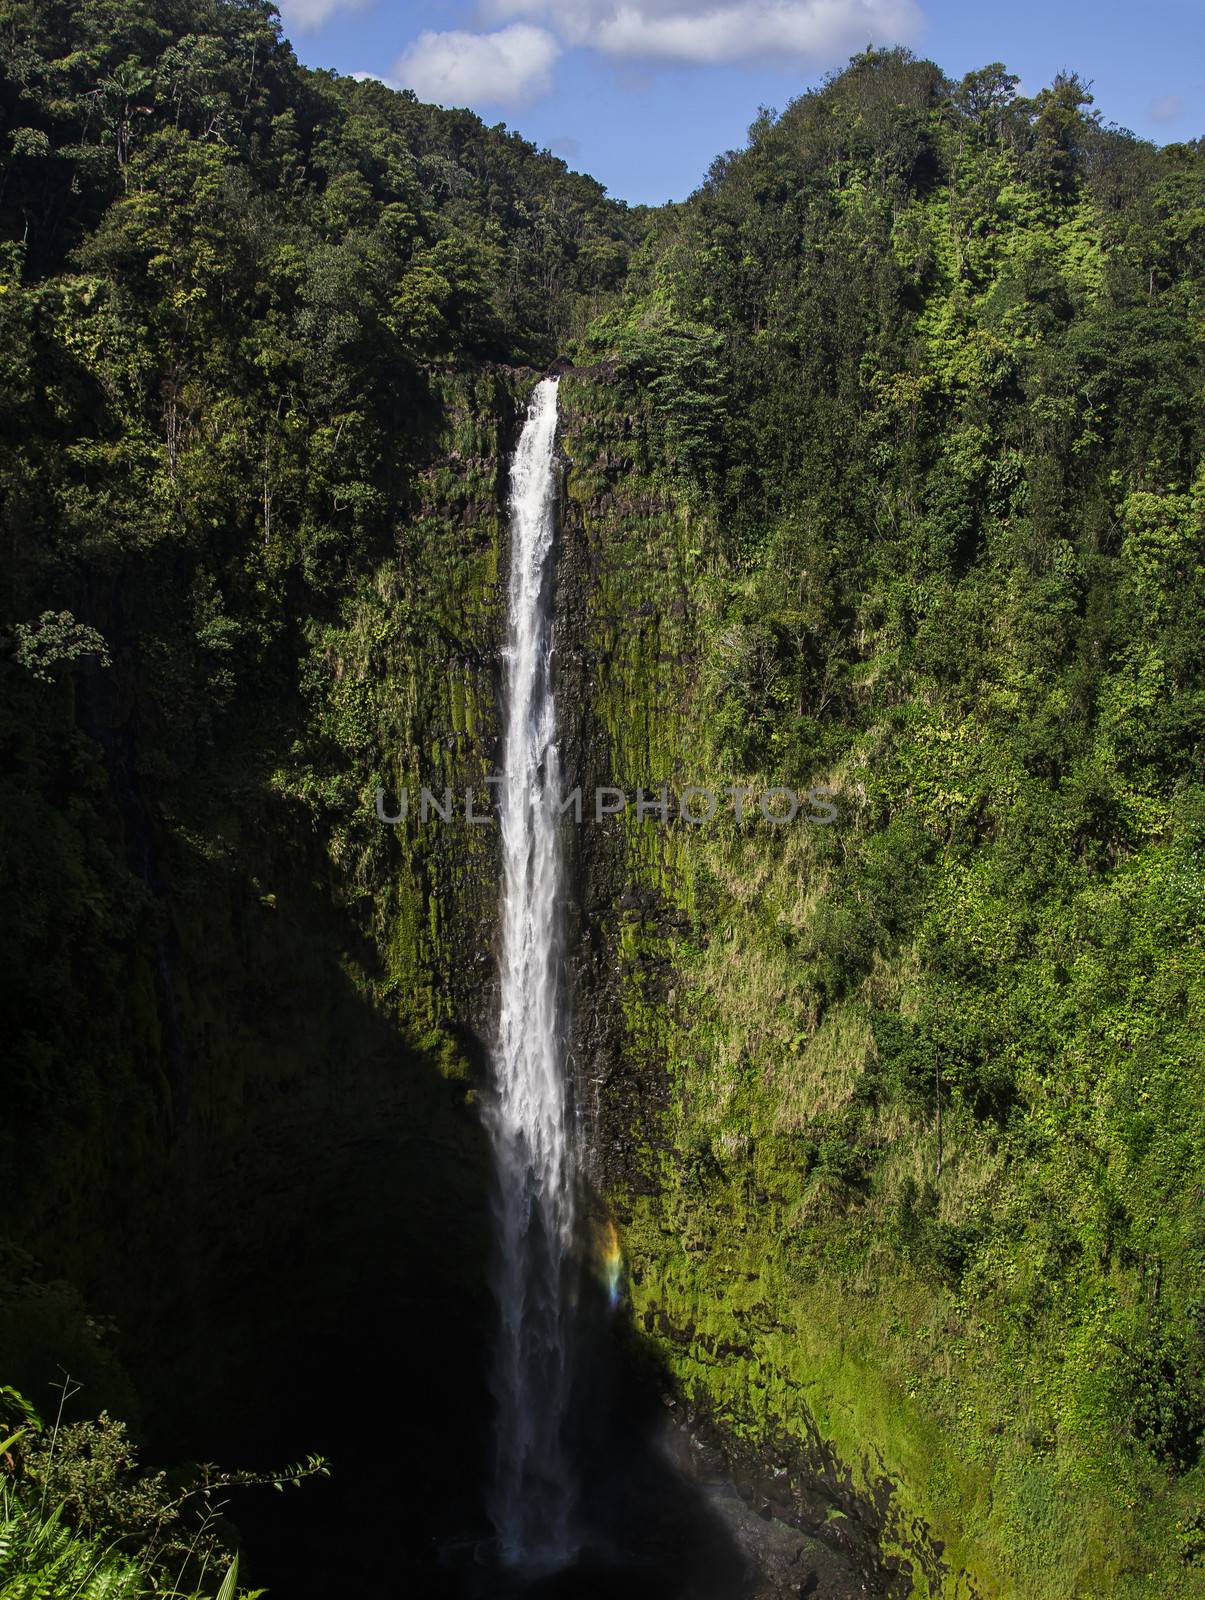 Spectacular Akaka Falls with rainbow, 420 feet high waterfall north of Hilo on Big Island, Hawaii.